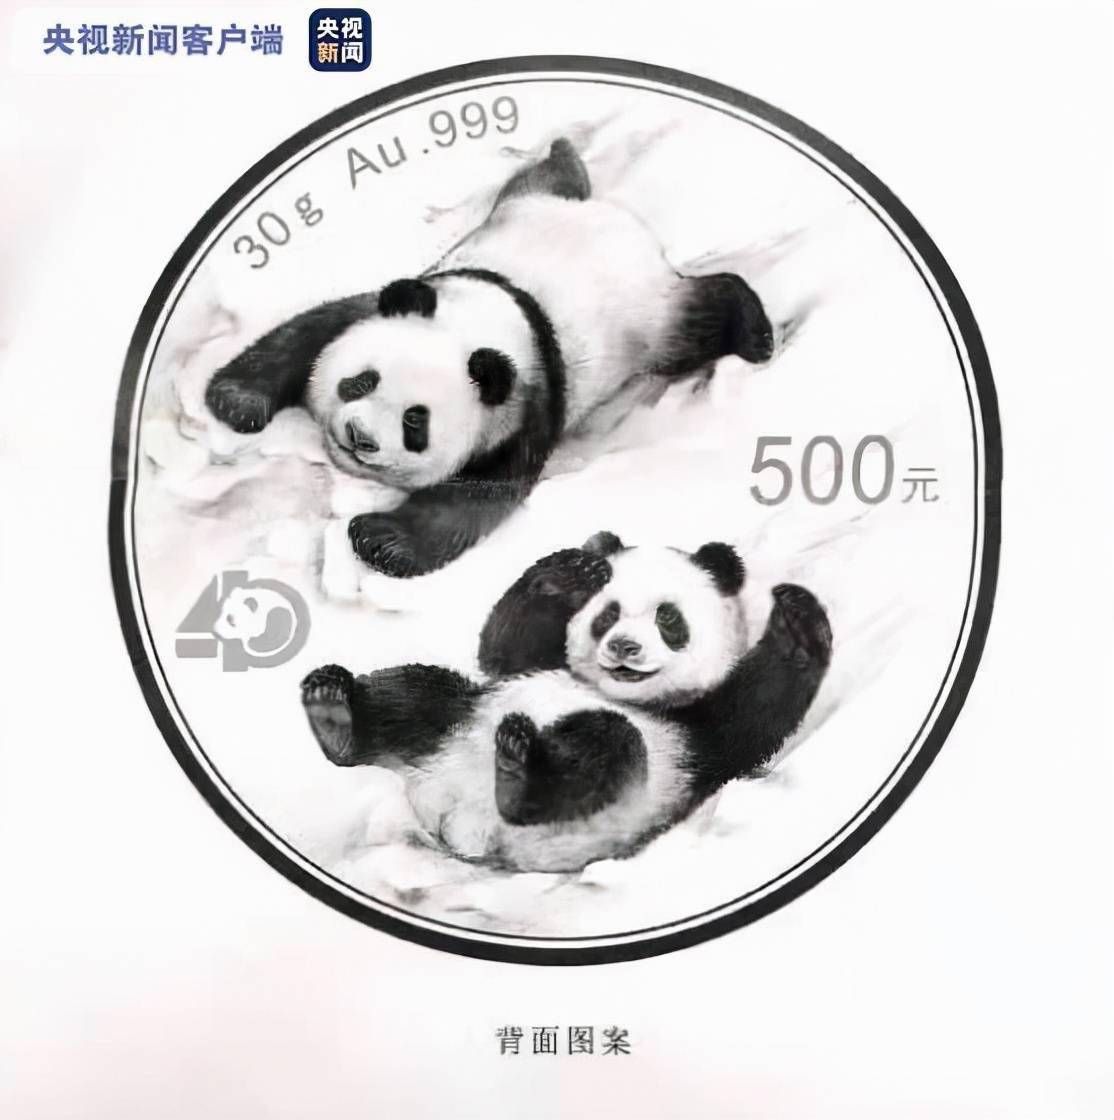 “爱上熊猫爱上雪”——2022版熊猫金币图案发布，以冬奥会为主题